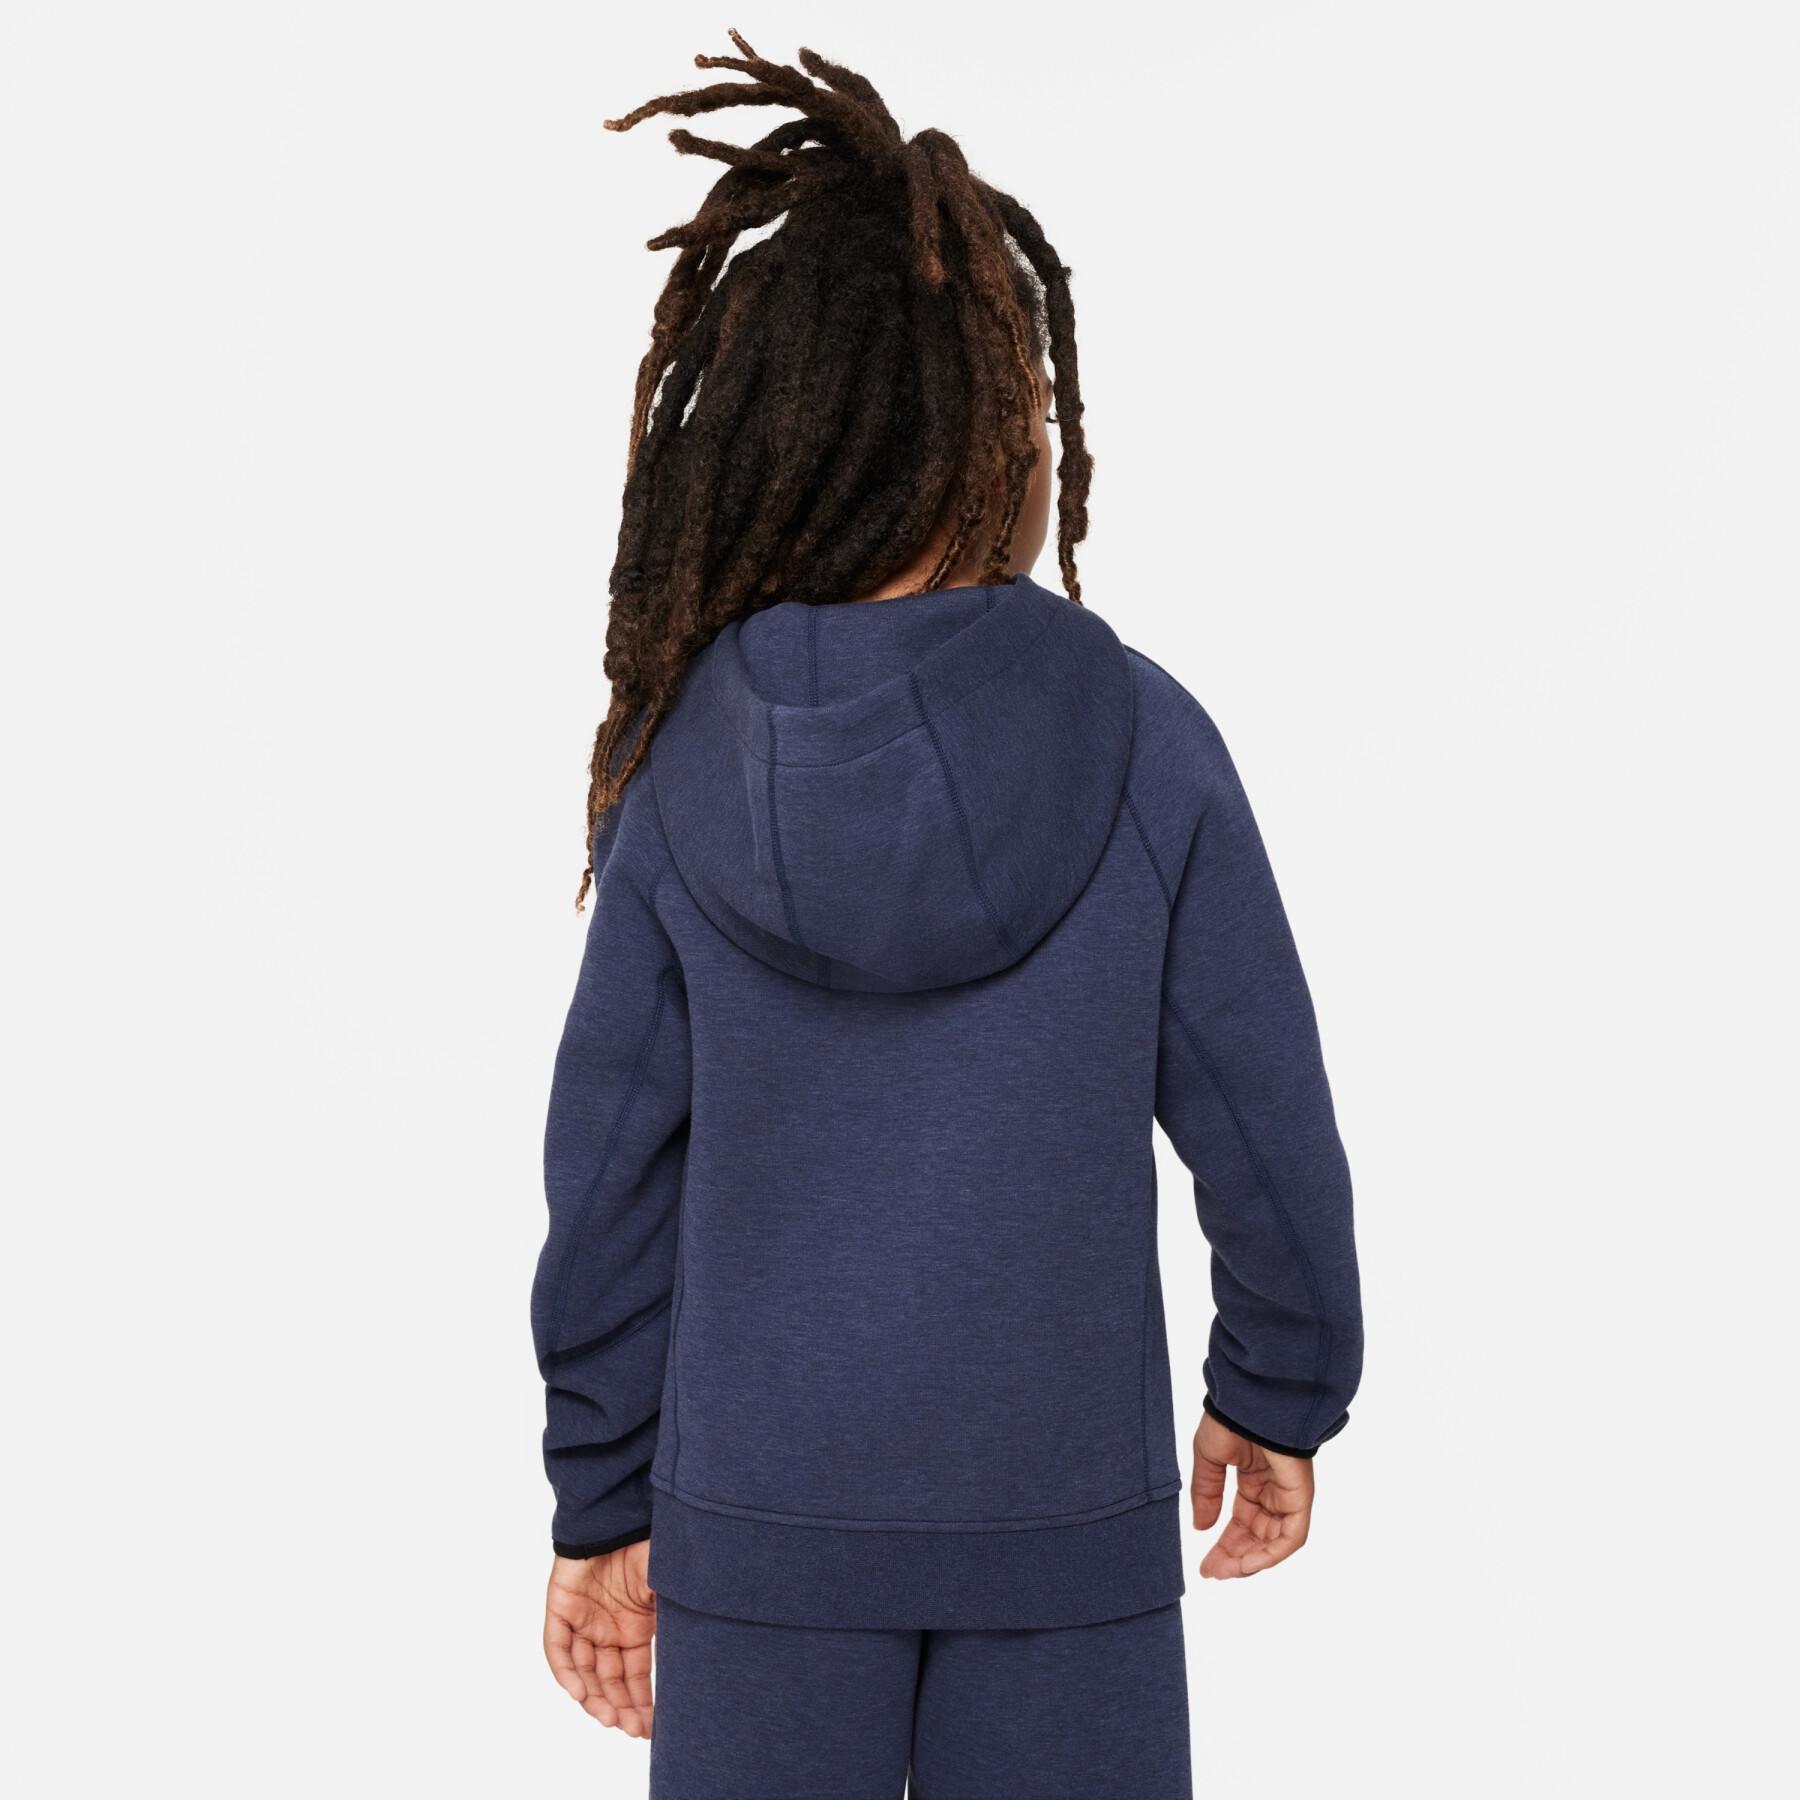 Sudadera con capucha para niños Nike Tech Fleece